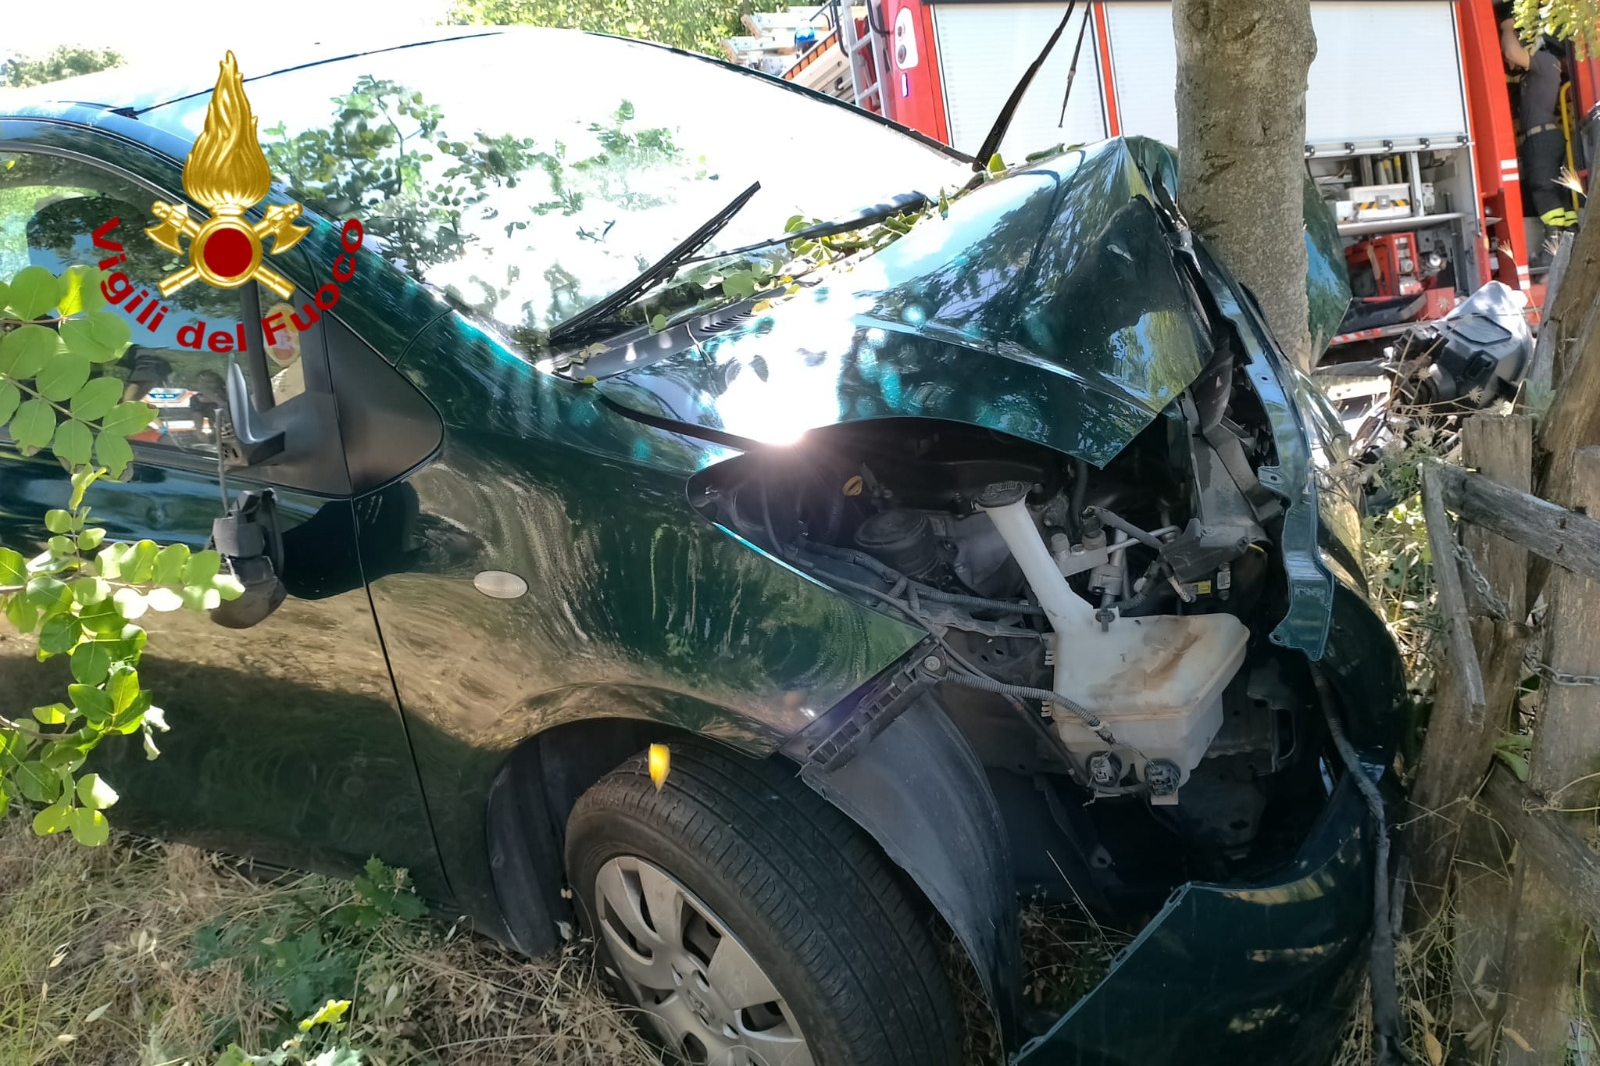 Nughedu Santa Vittoria, donna perde il controllo dell’auto e finisce contro un albero